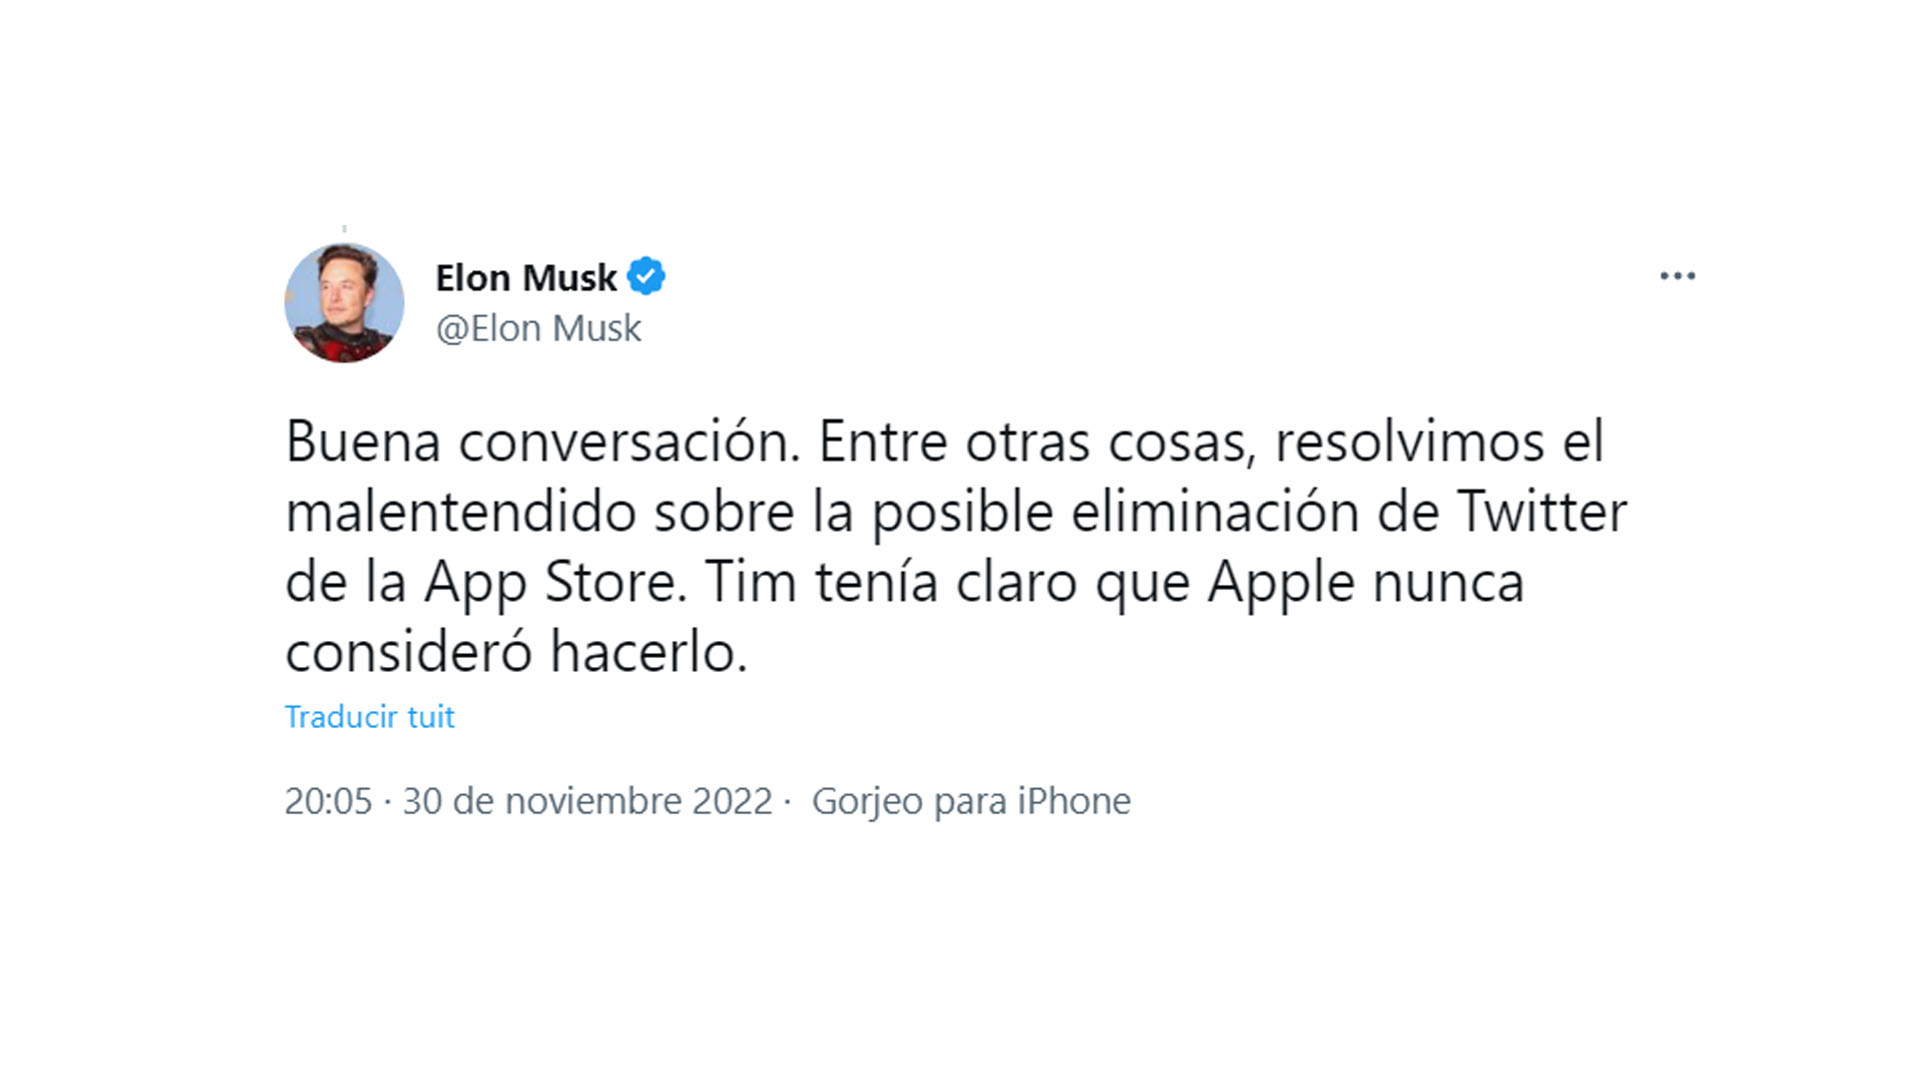 El tweet de Elon Musk, luego de reunirse con Tim Cook, el CEO de Apple